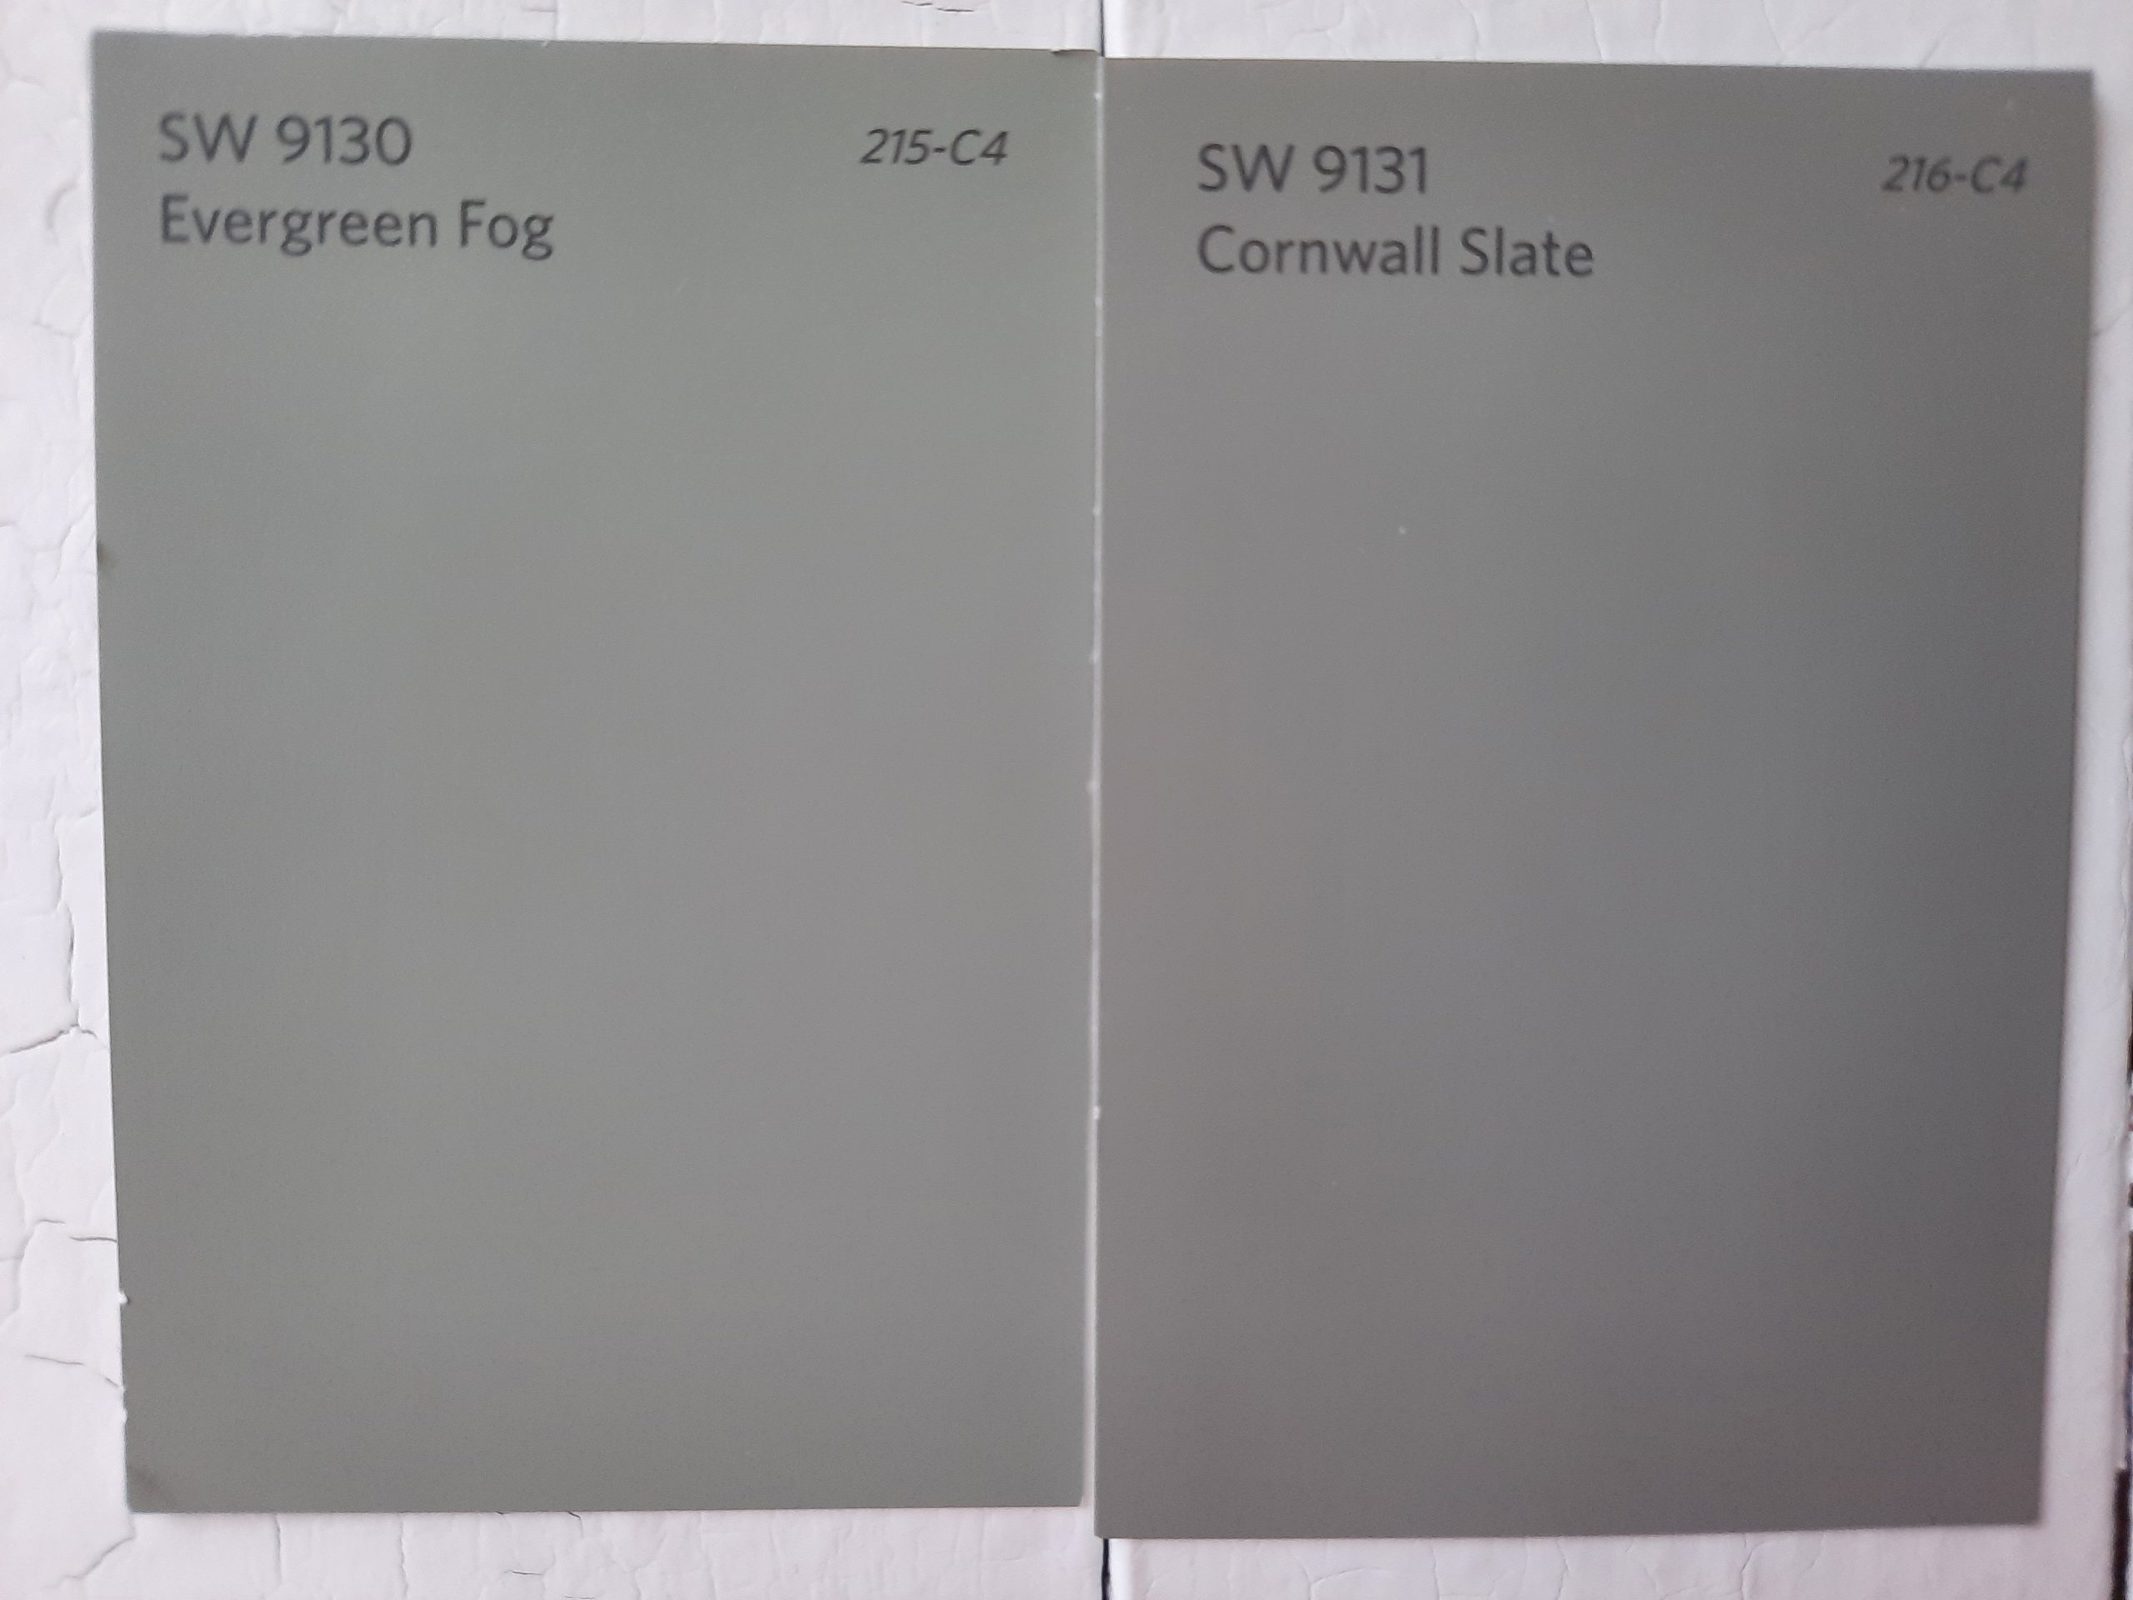 6 Evergreen Fog vs Cornwall Slate scaled